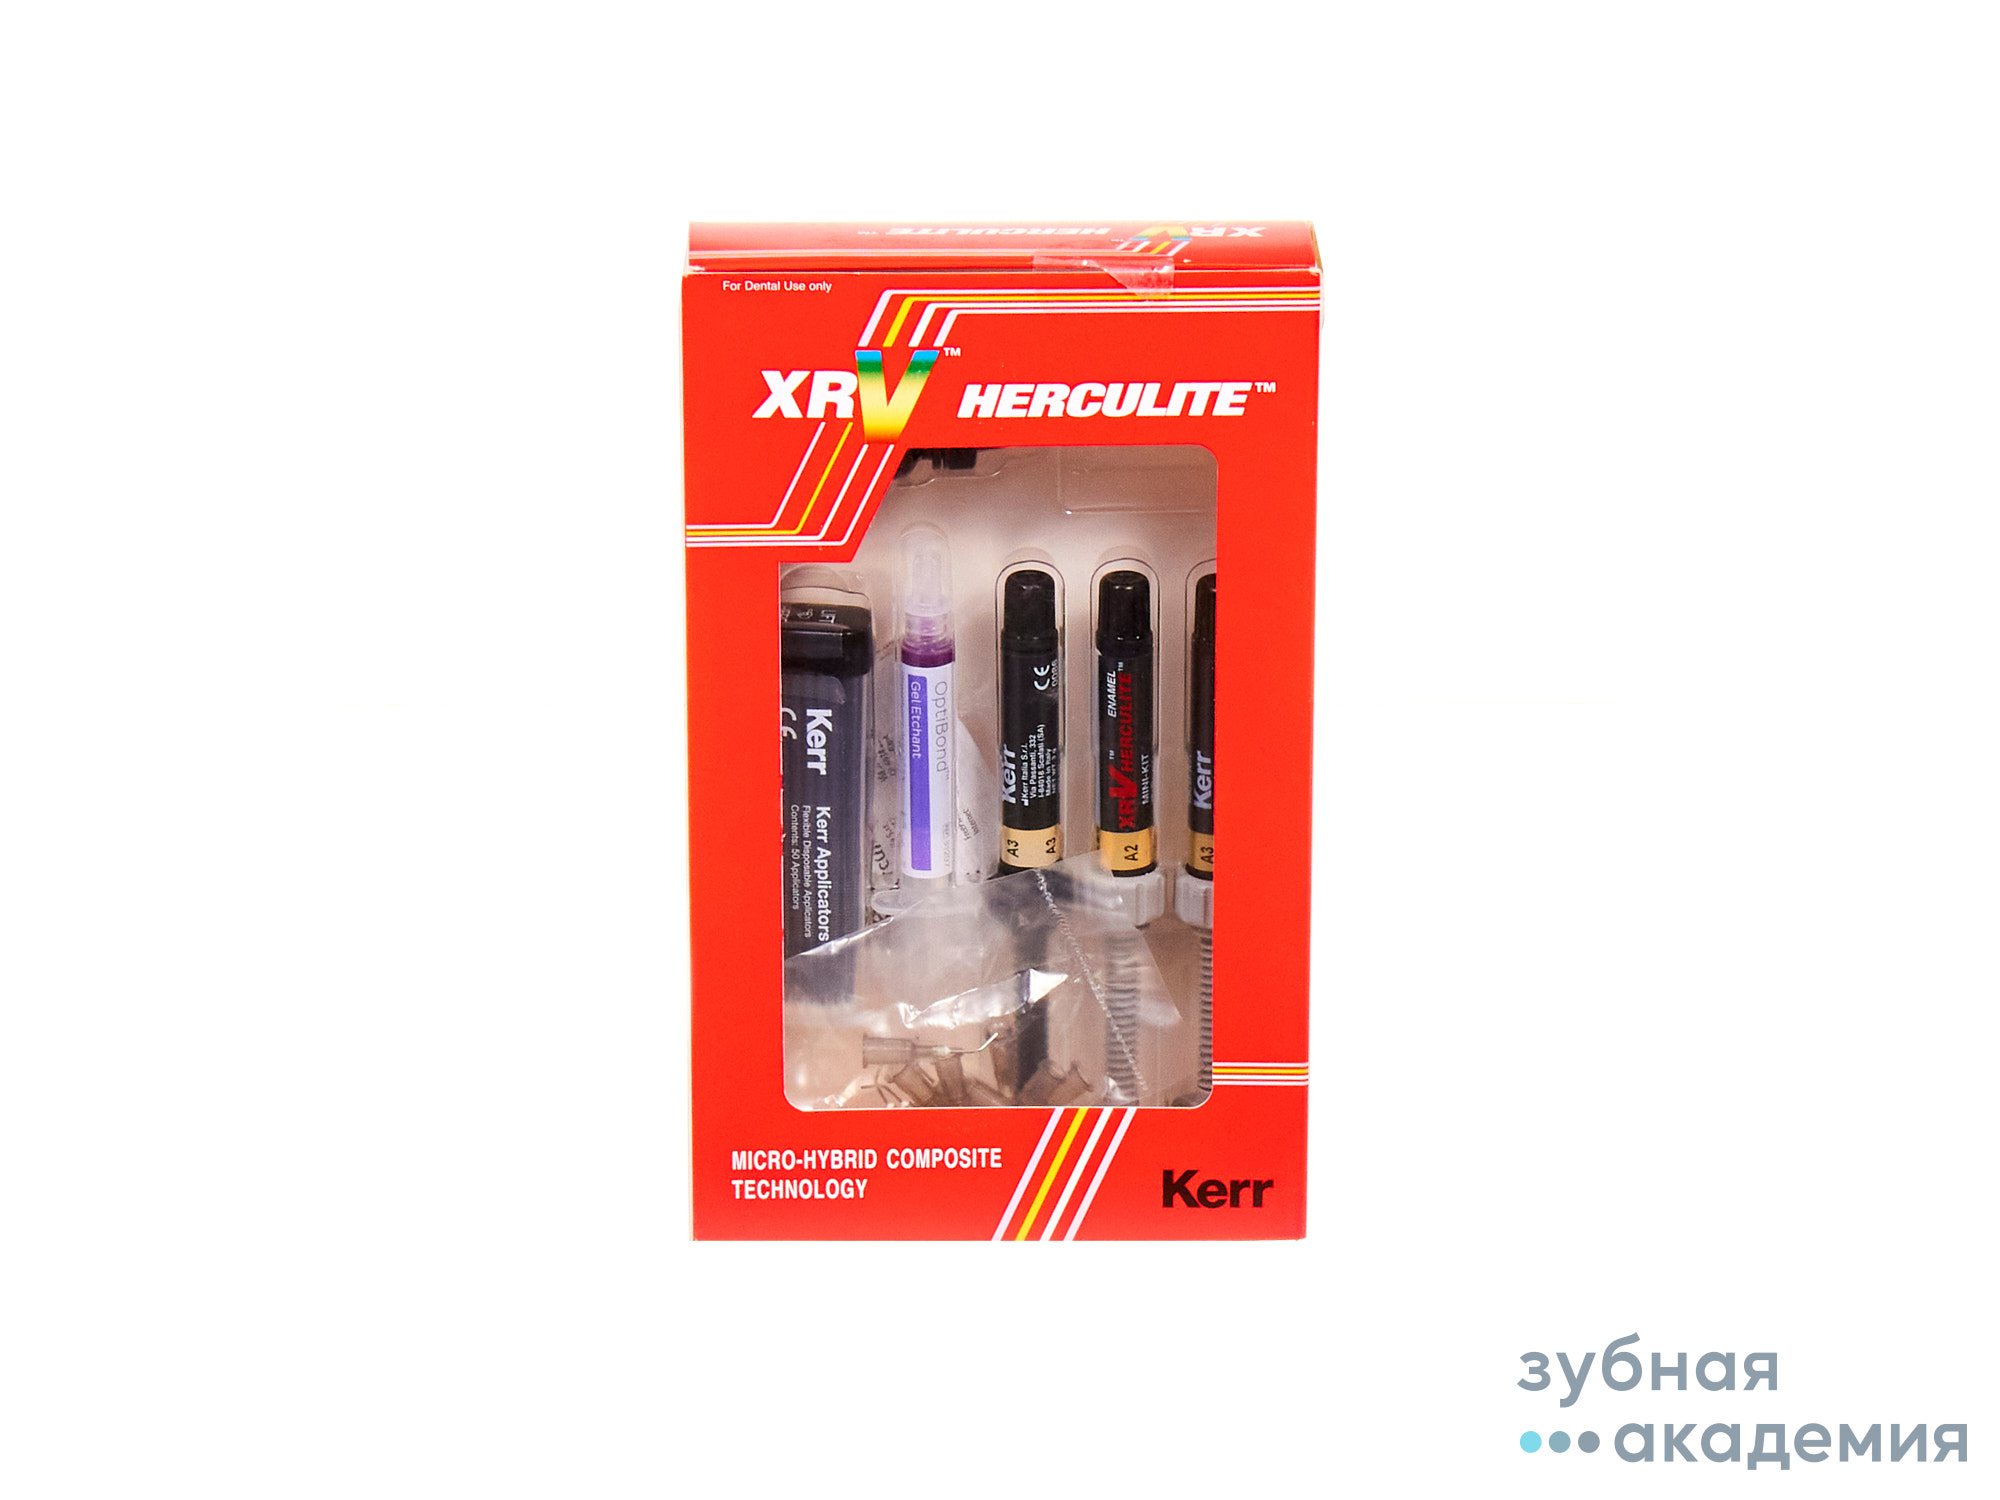 Herculite XRV Mini Kit / Геркулайт XRV Мини Кит (3 х 3г + адгезив + гель ) Kerr/ Италия